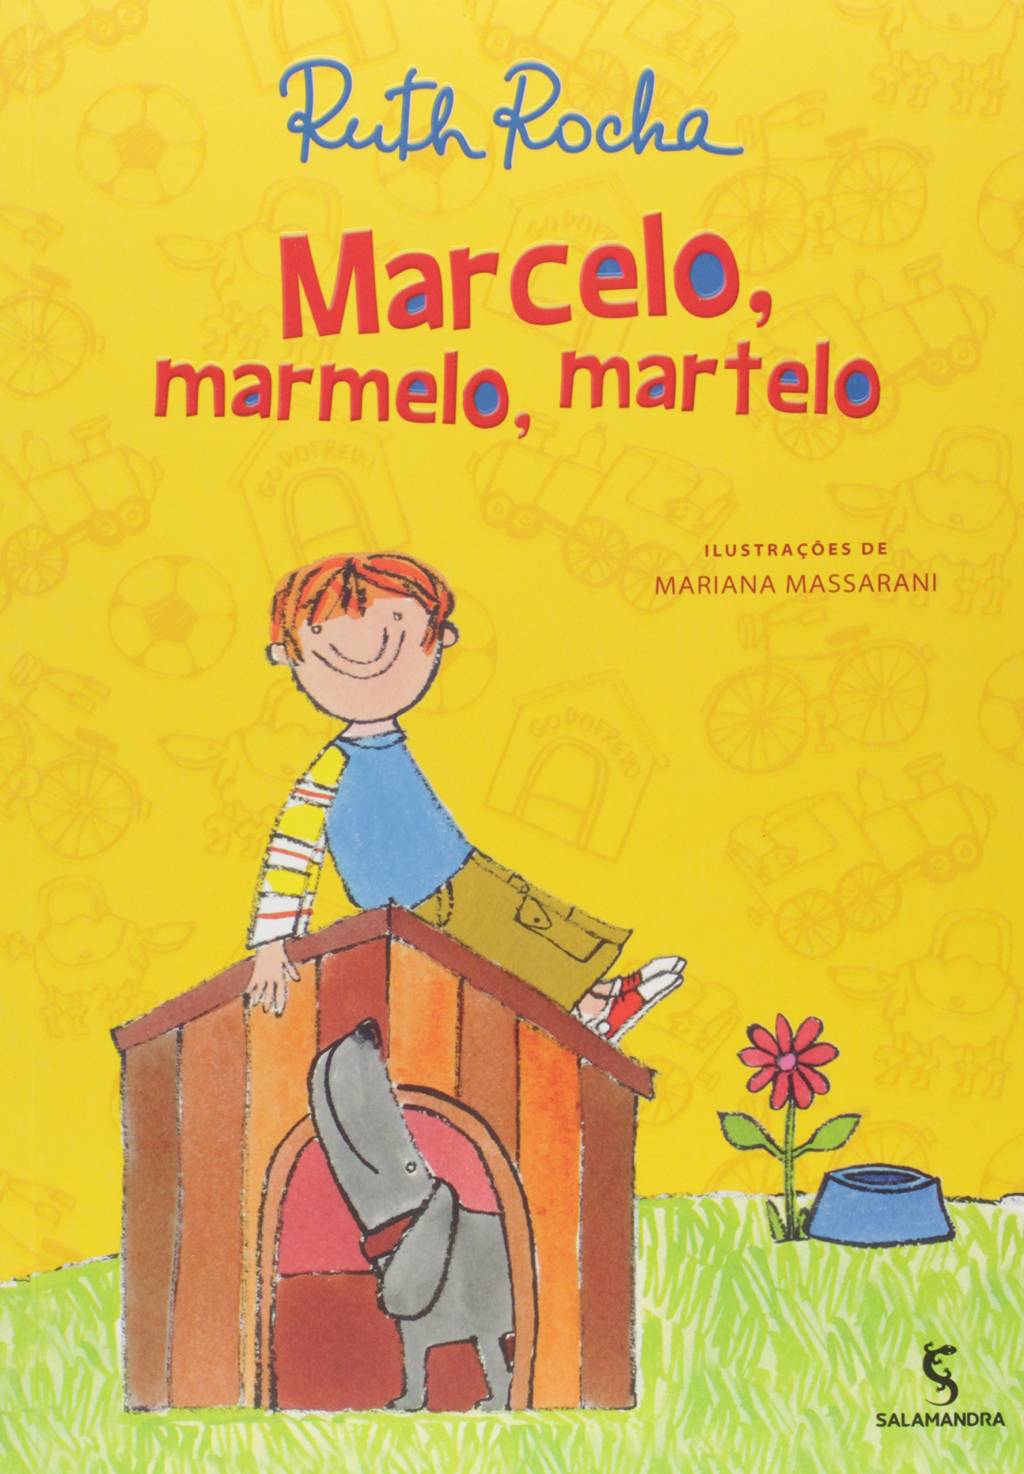 Capa do livro traz ilustração de um menino em cima de uma casinha de cachorro